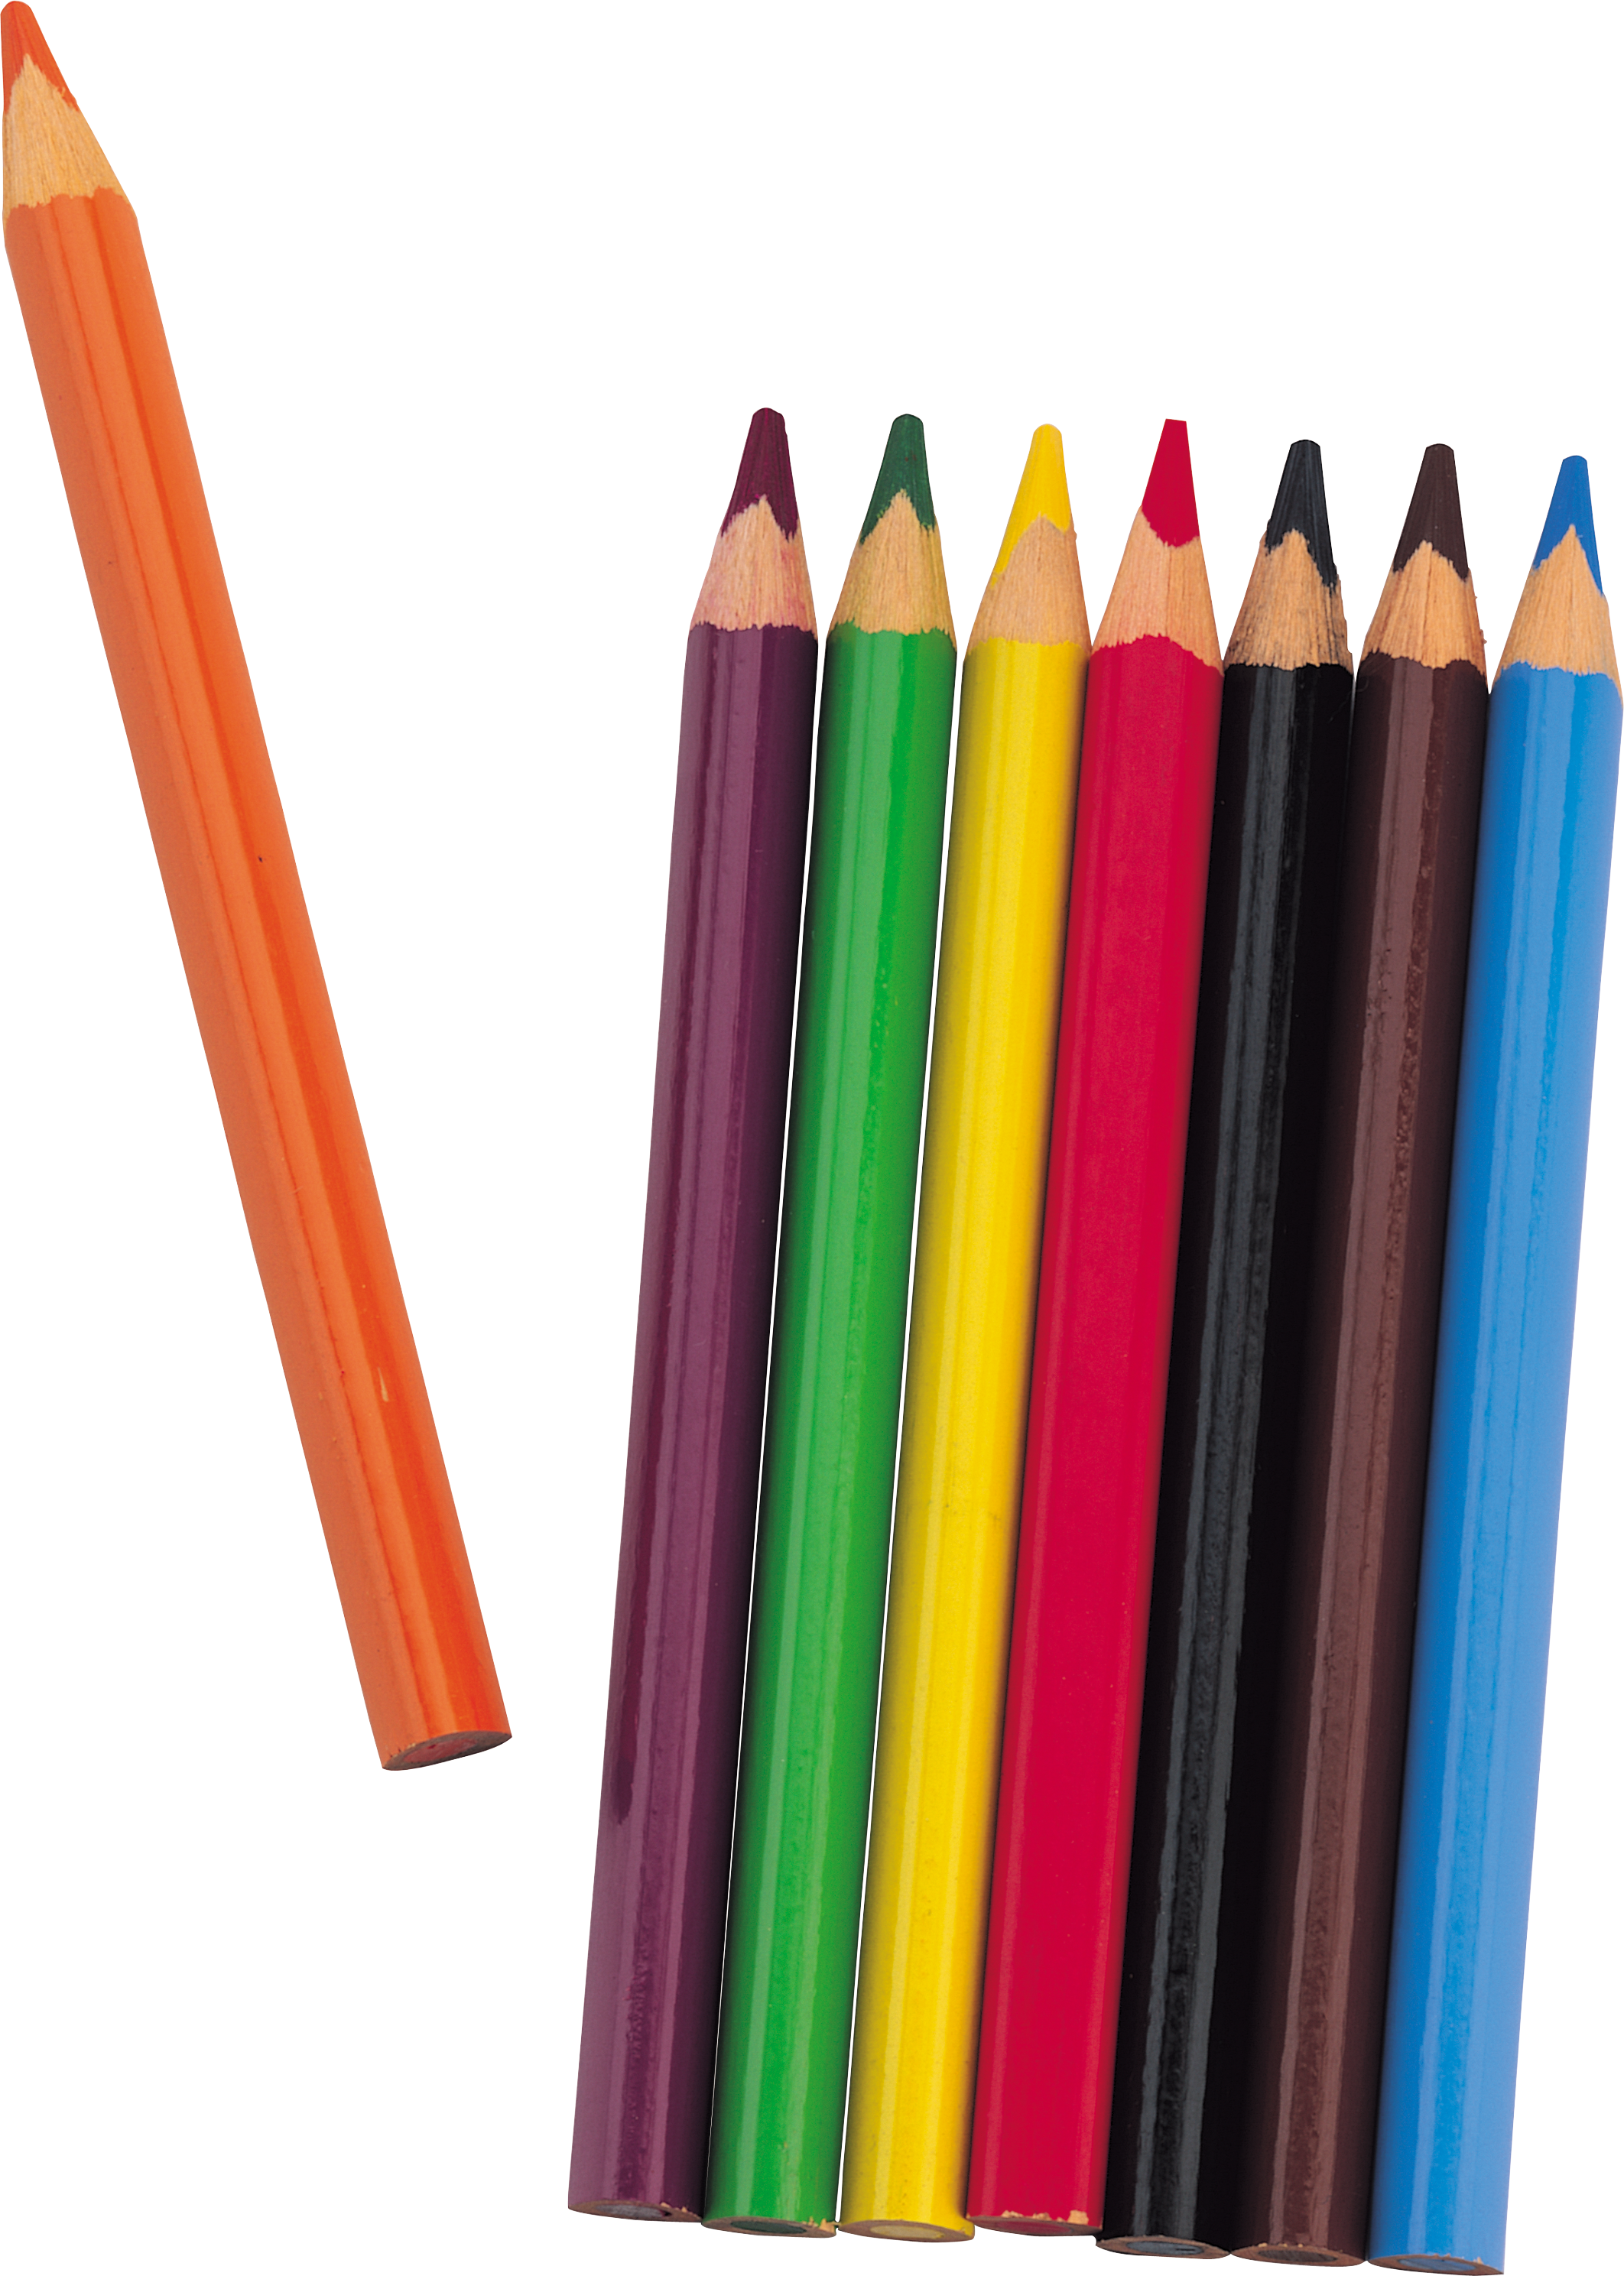 Download Crayon clipart school equipment, Crayon school equipment Transparent FREE for download on ...